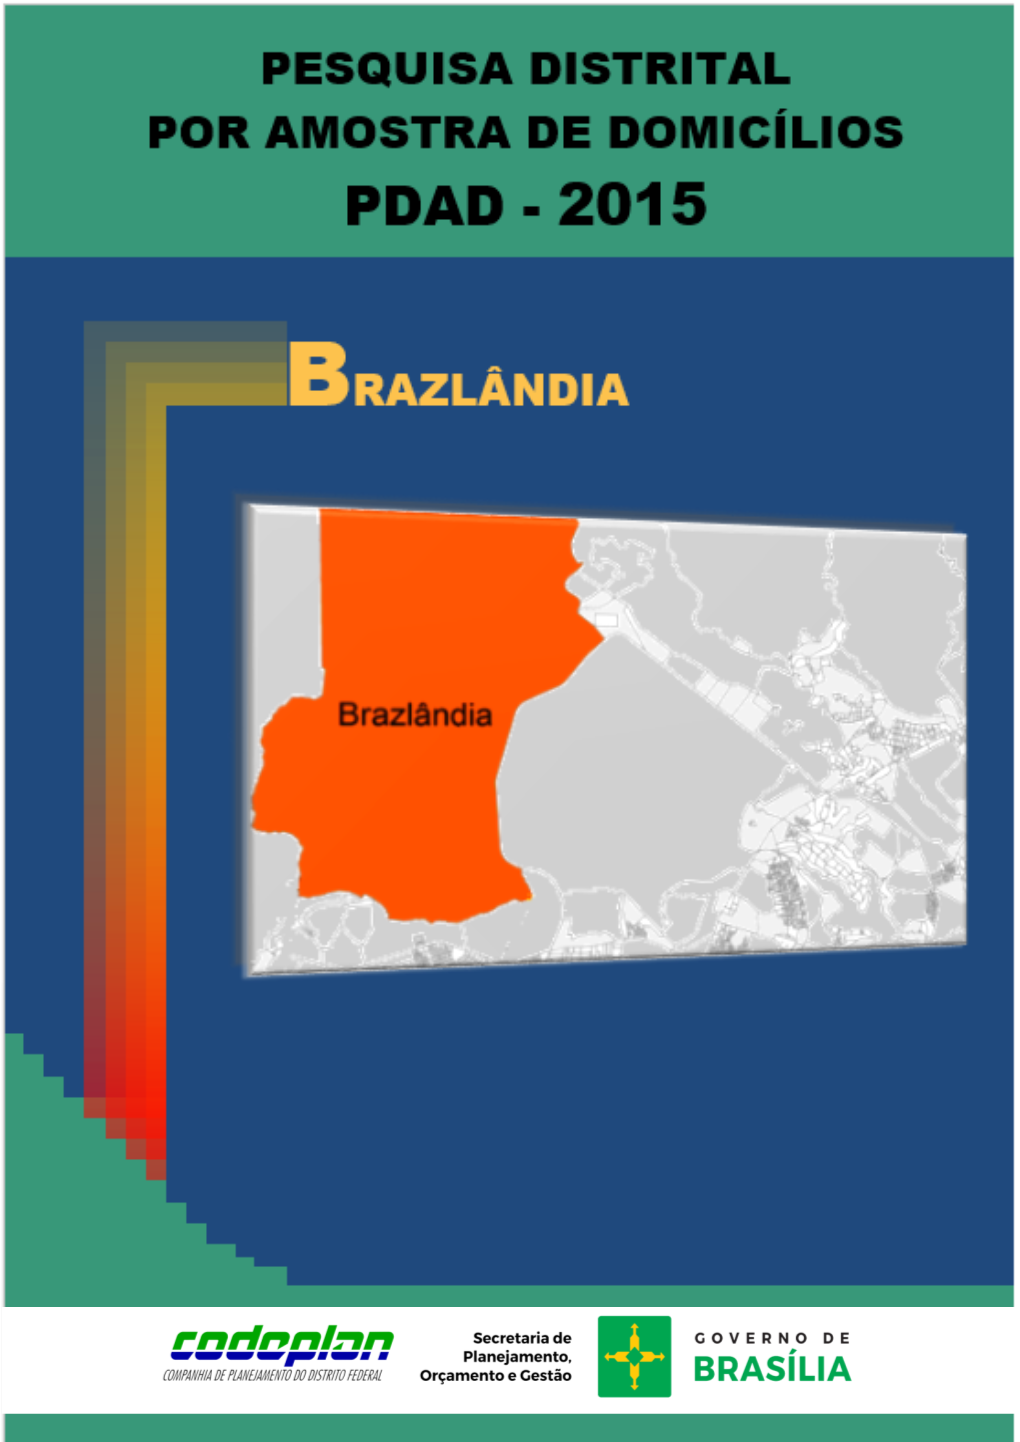 Brazlândia - Pdad 2015